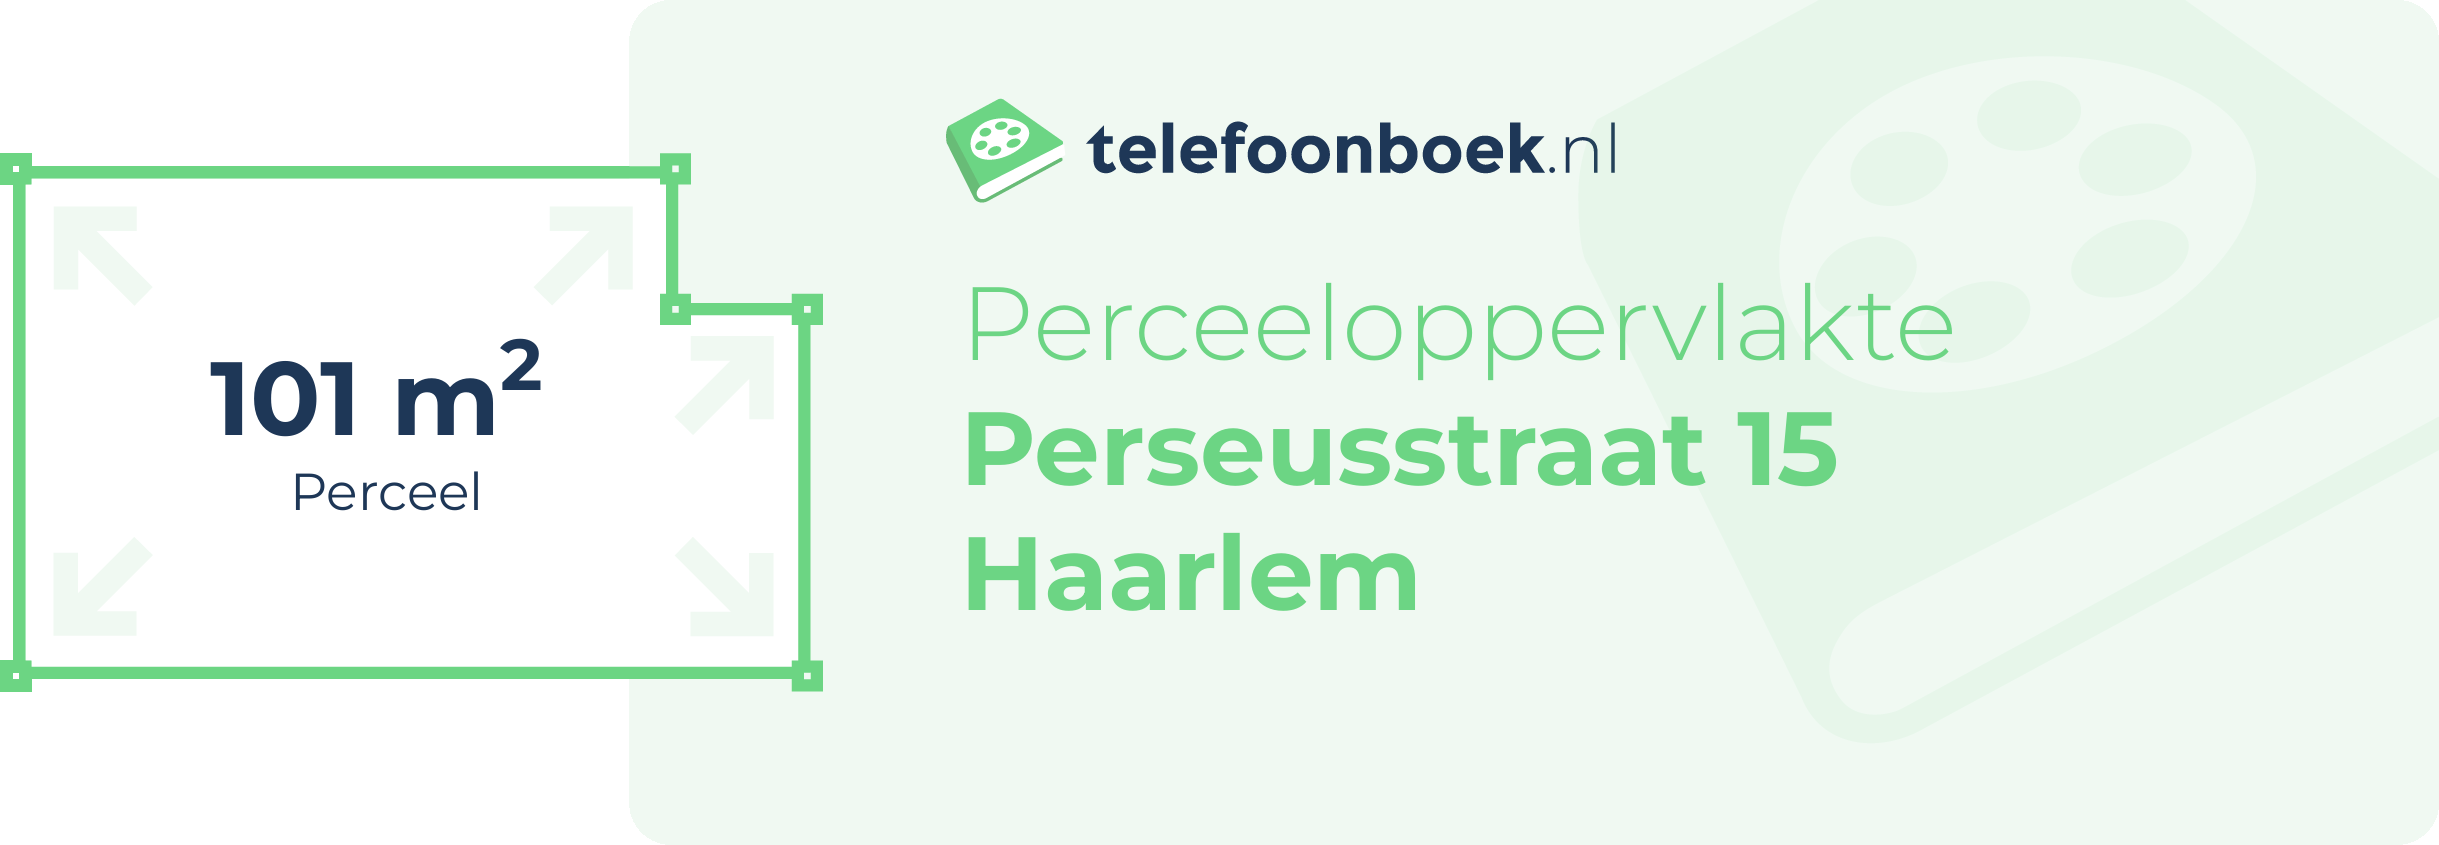 Perceeloppervlakte Perseusstraat 15 Haarlem